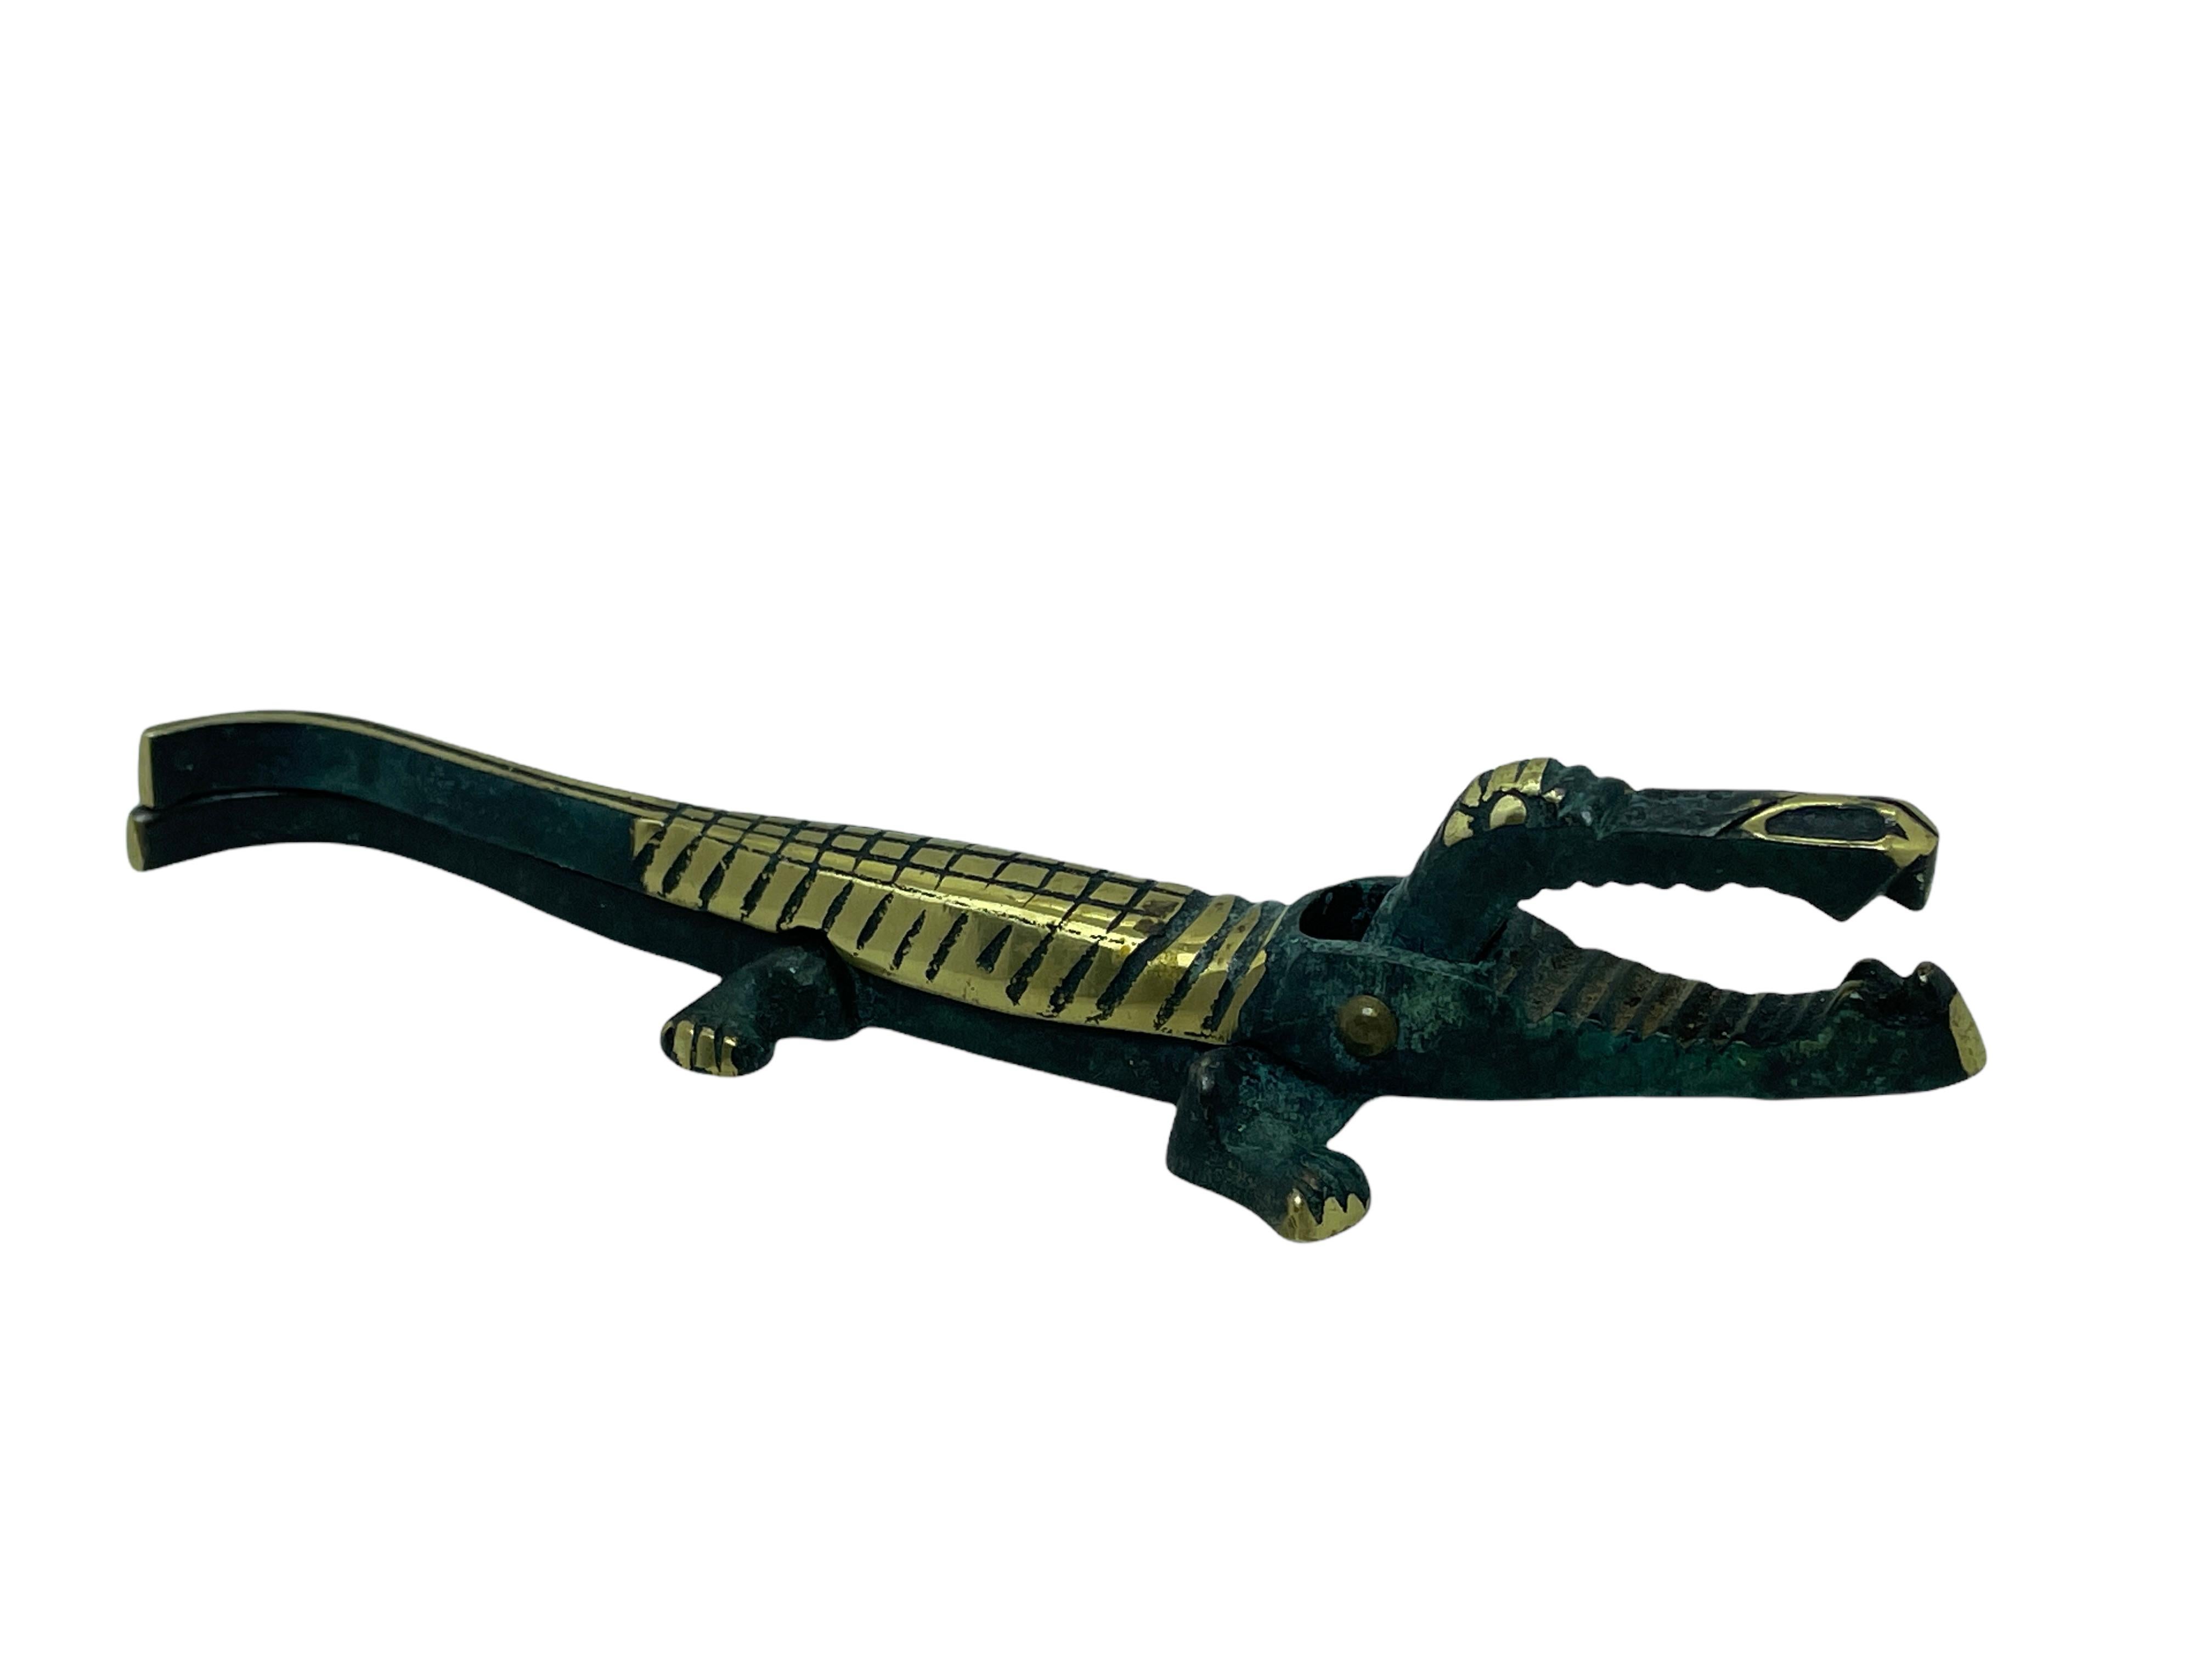 Casse-noix autrichien classique du début des années 1950 en forme d'alligator. Joli ajout à votre chambre ou simplement pour votre collection d'objets en bronze autrichien. Trouvé dans une vente de succession à Vienne, en Autriche.